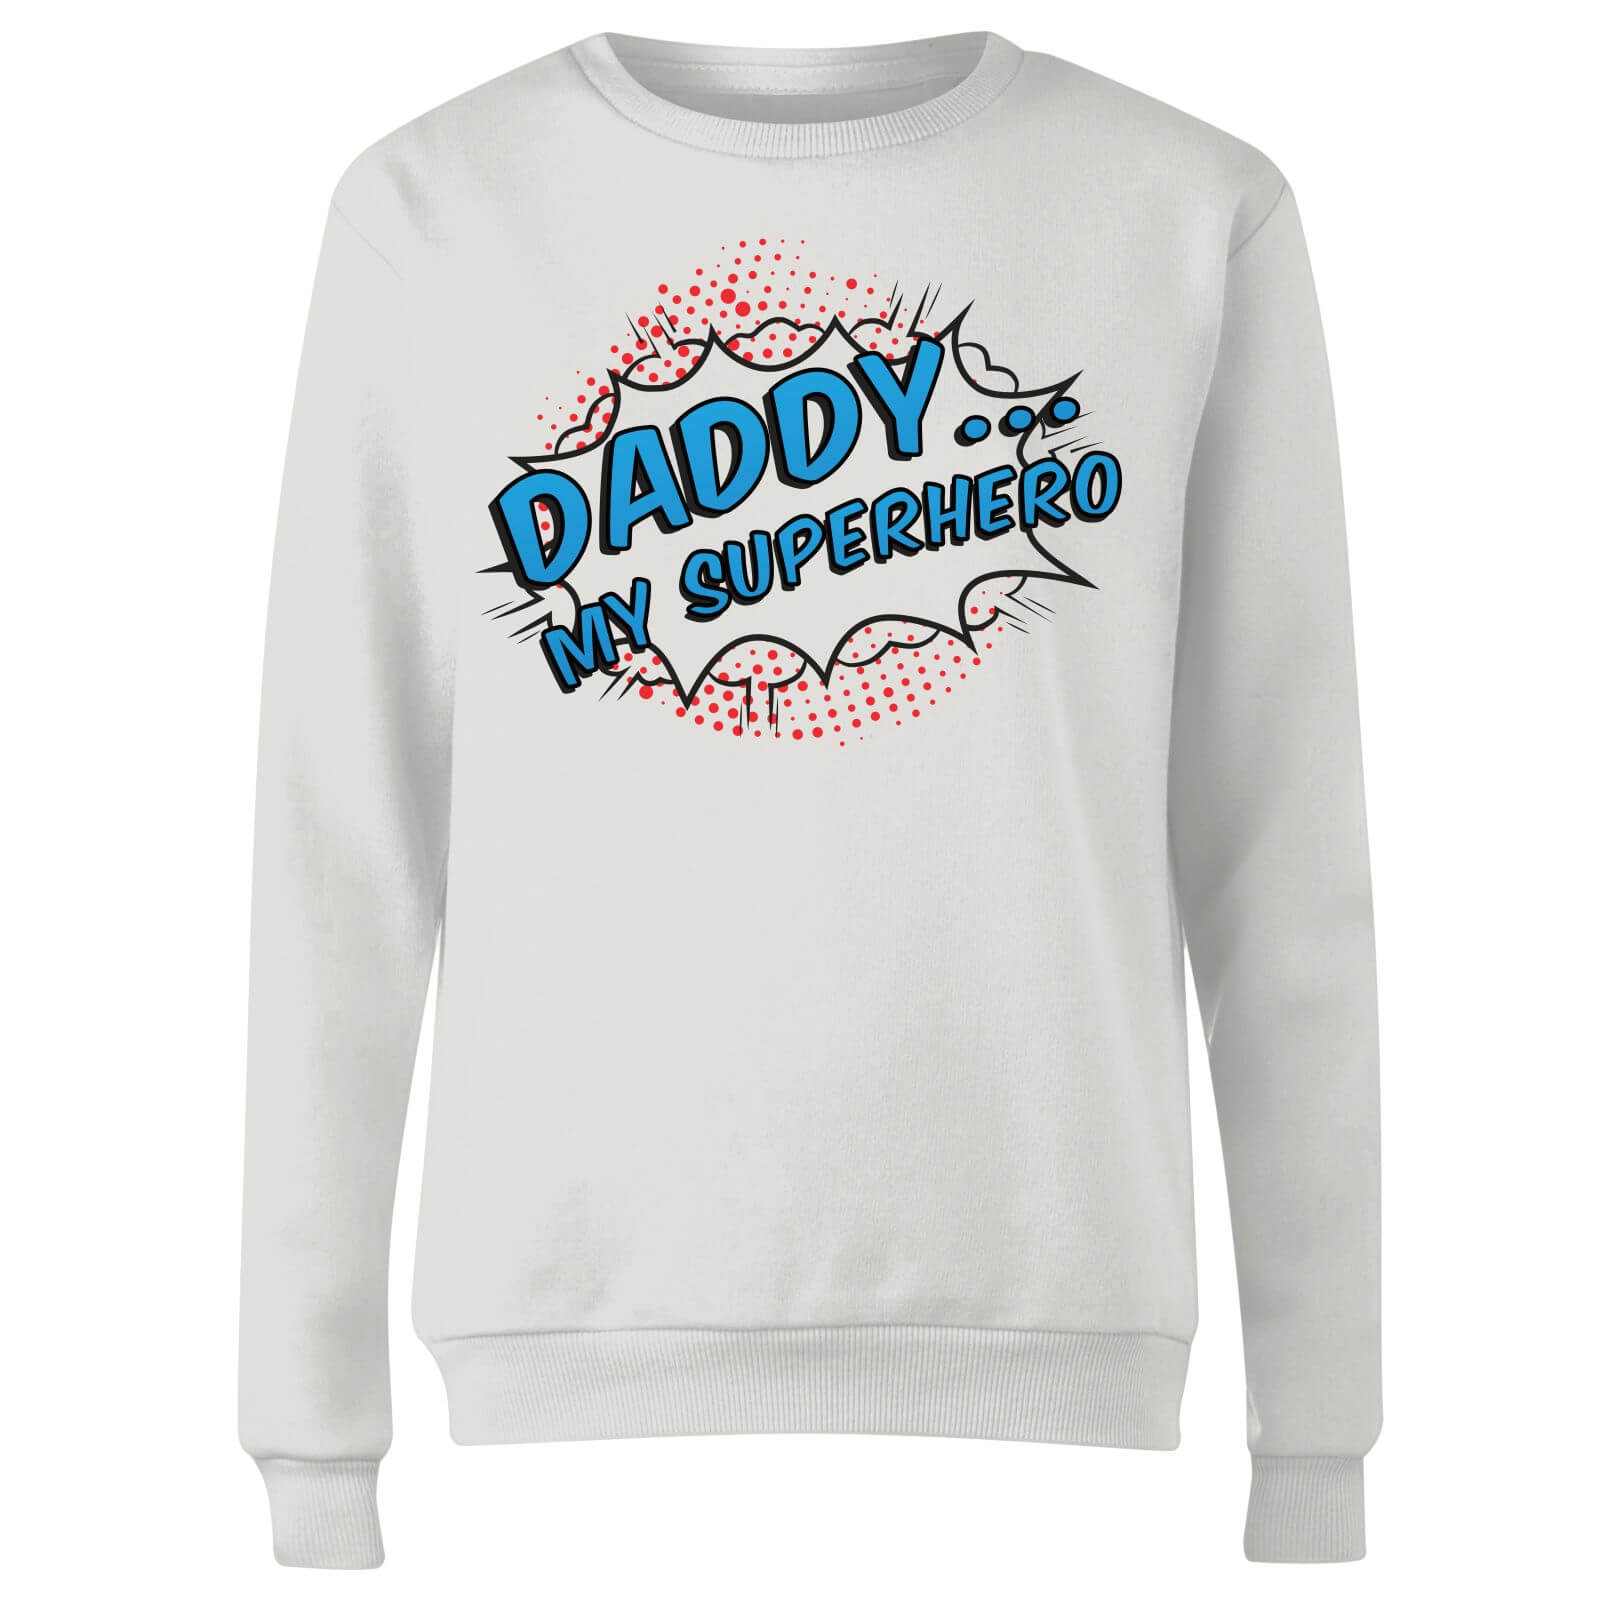 Daddy My Superhero Women's Sweatshirt - White - XXL - White